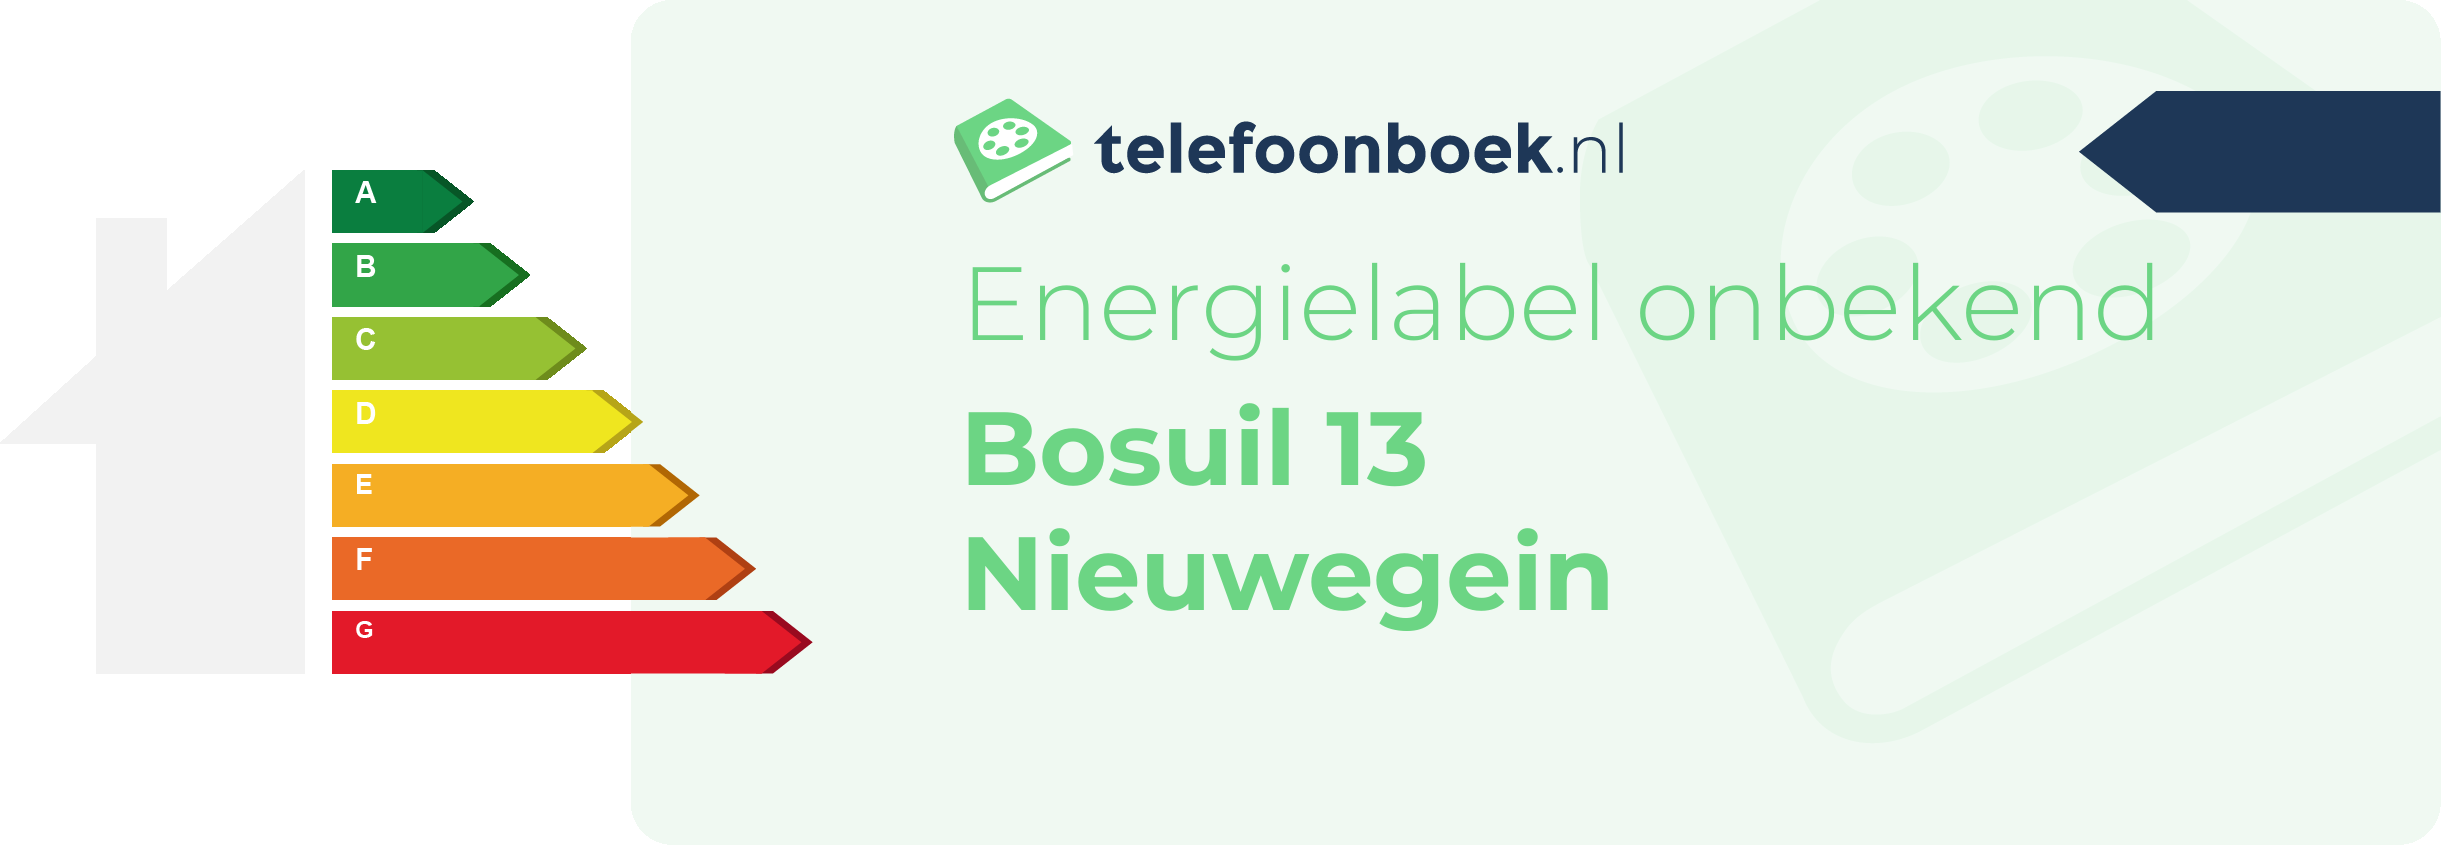 Energielabel Bosuil 13 Nieuwegein